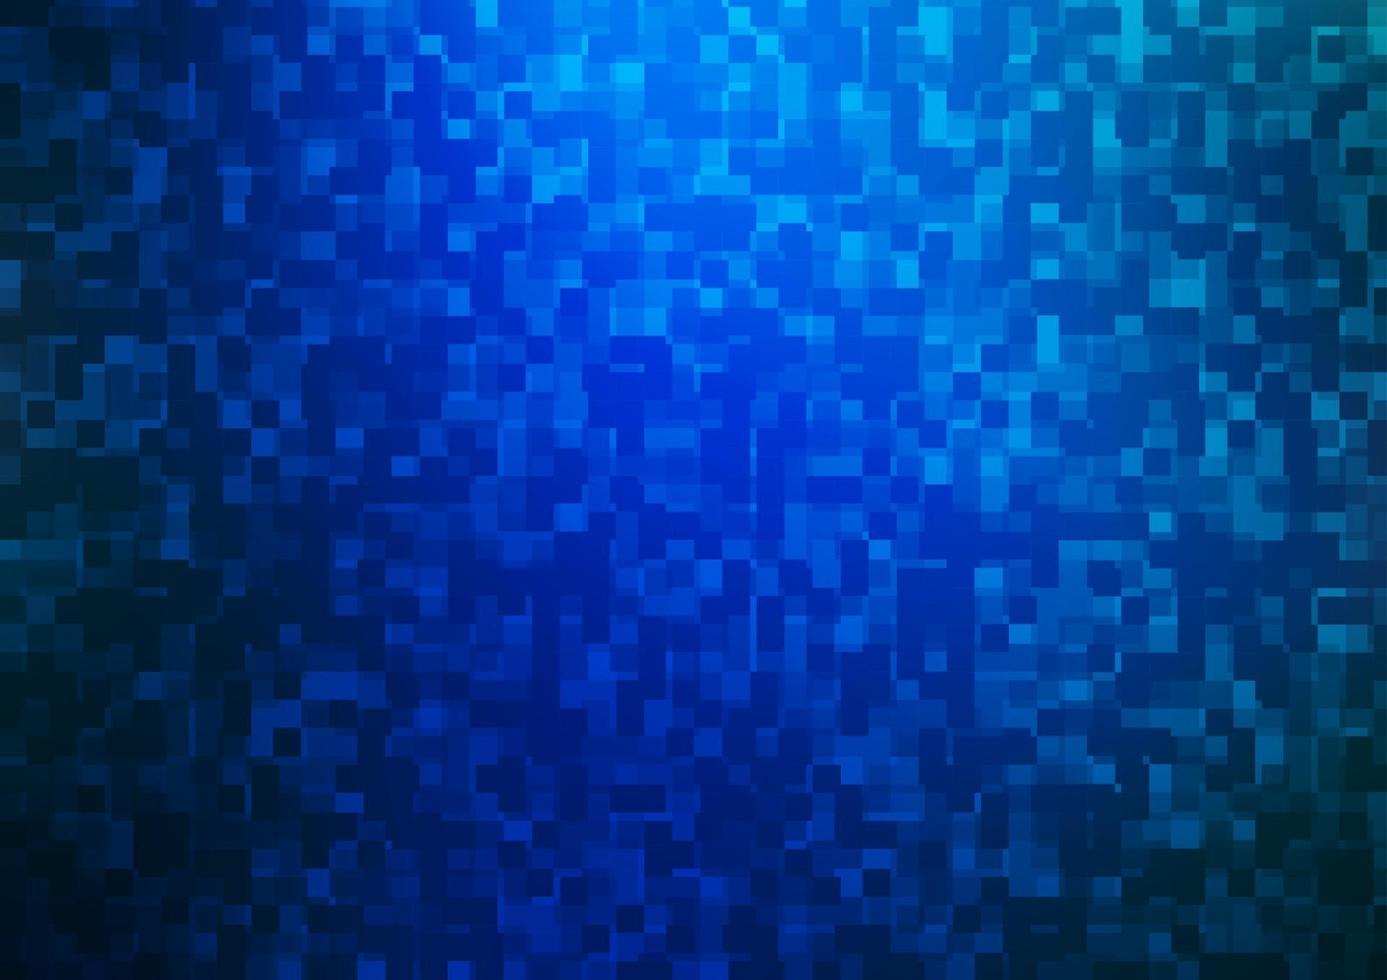 modèle vectoriel bleu clair dans un style carré.